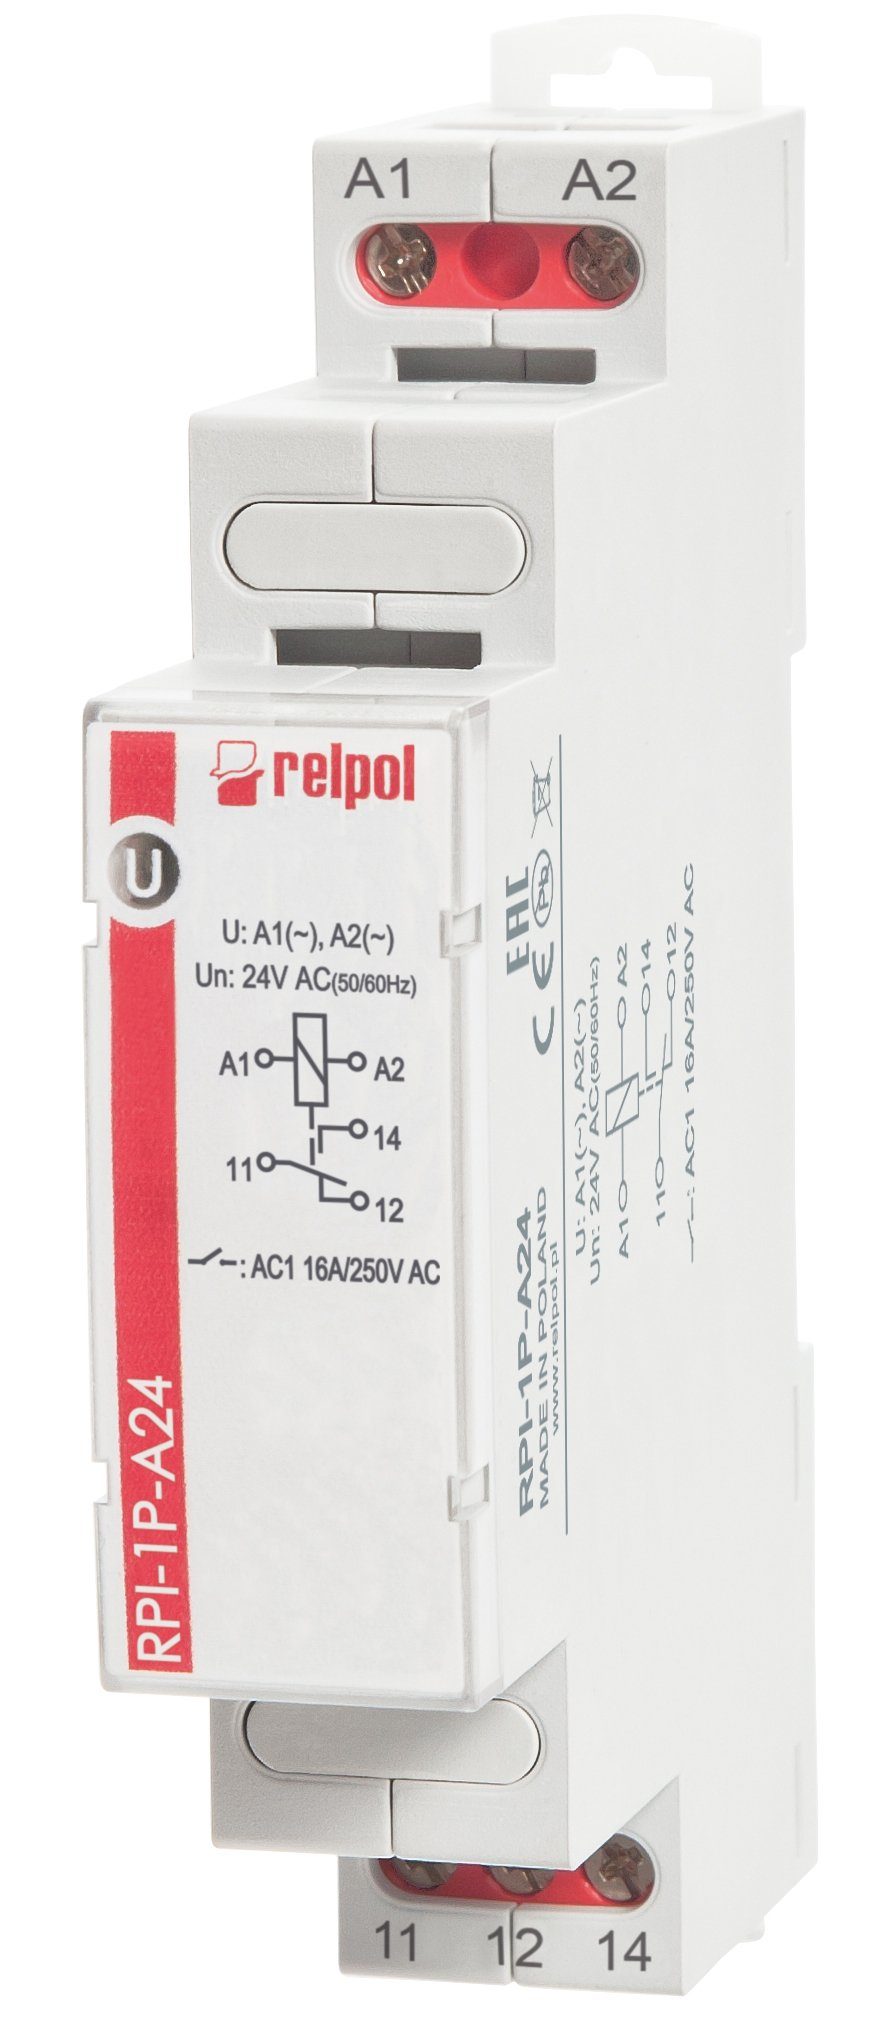 Relpol 1 - für Wechsler, Hutschiene 24V AC RPI-1P-A24 Installationsrelais Schaltrelais 16A Verteilerbox